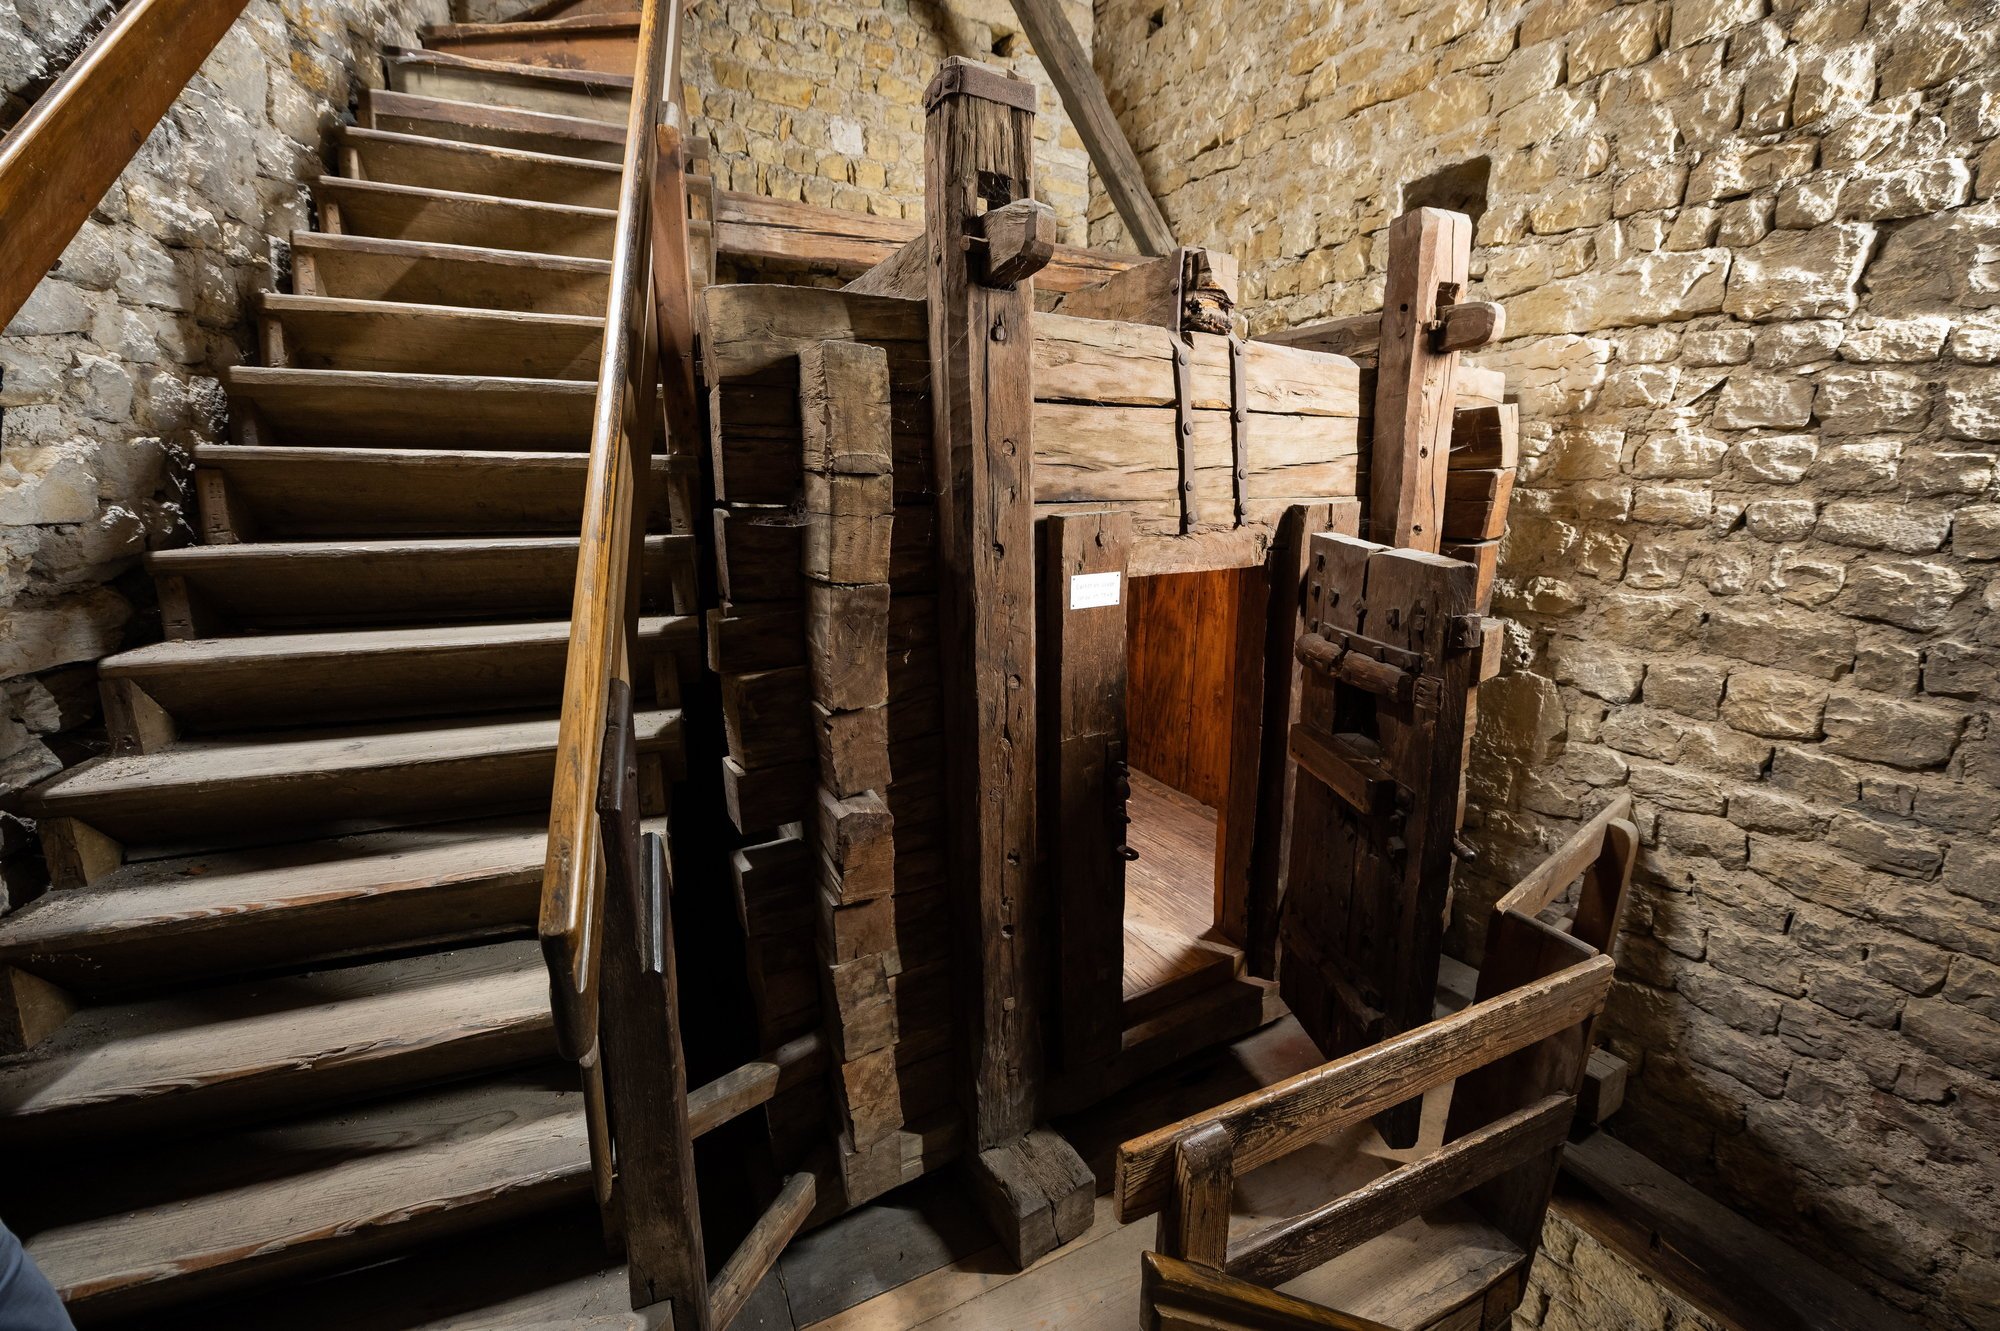 Après sa tentative d'évasion, Benedetto fut emprisonné dans un cachot en bois de la tour des Prisons, semblable à celui-ci.